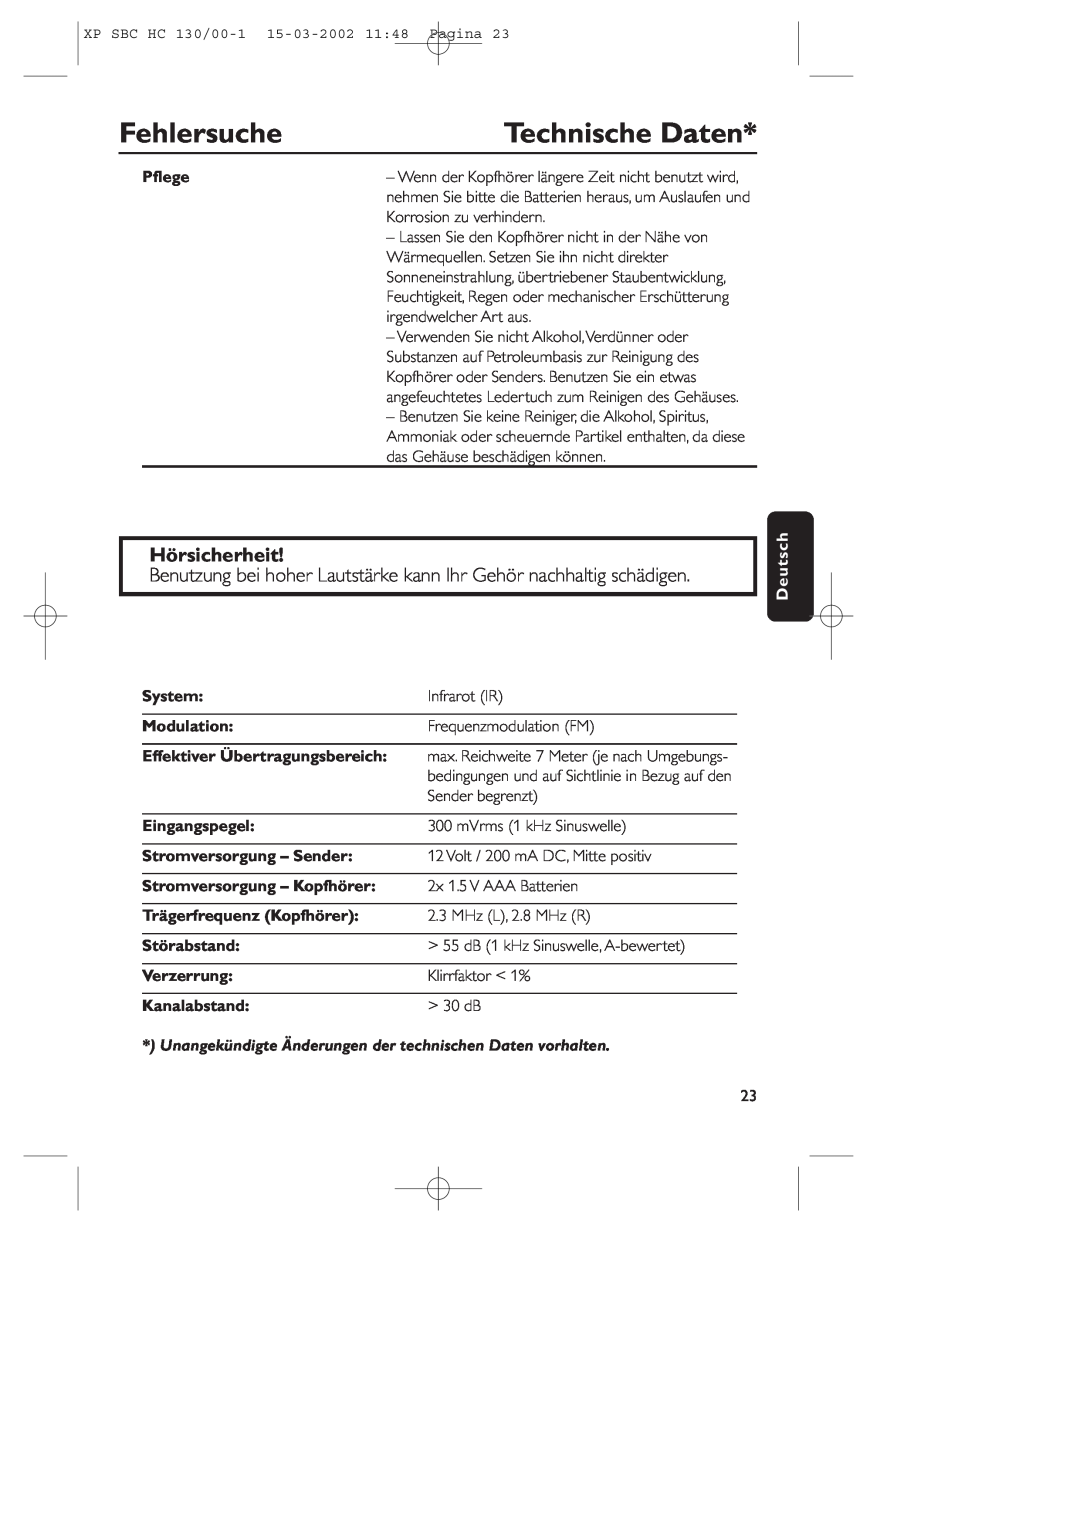 Philips SBC HC130 manual Technische Daten, Fehlersuche, Hörsicherheit, Pﬂege, Deutsch, System, Modulation, Eingangspegel 